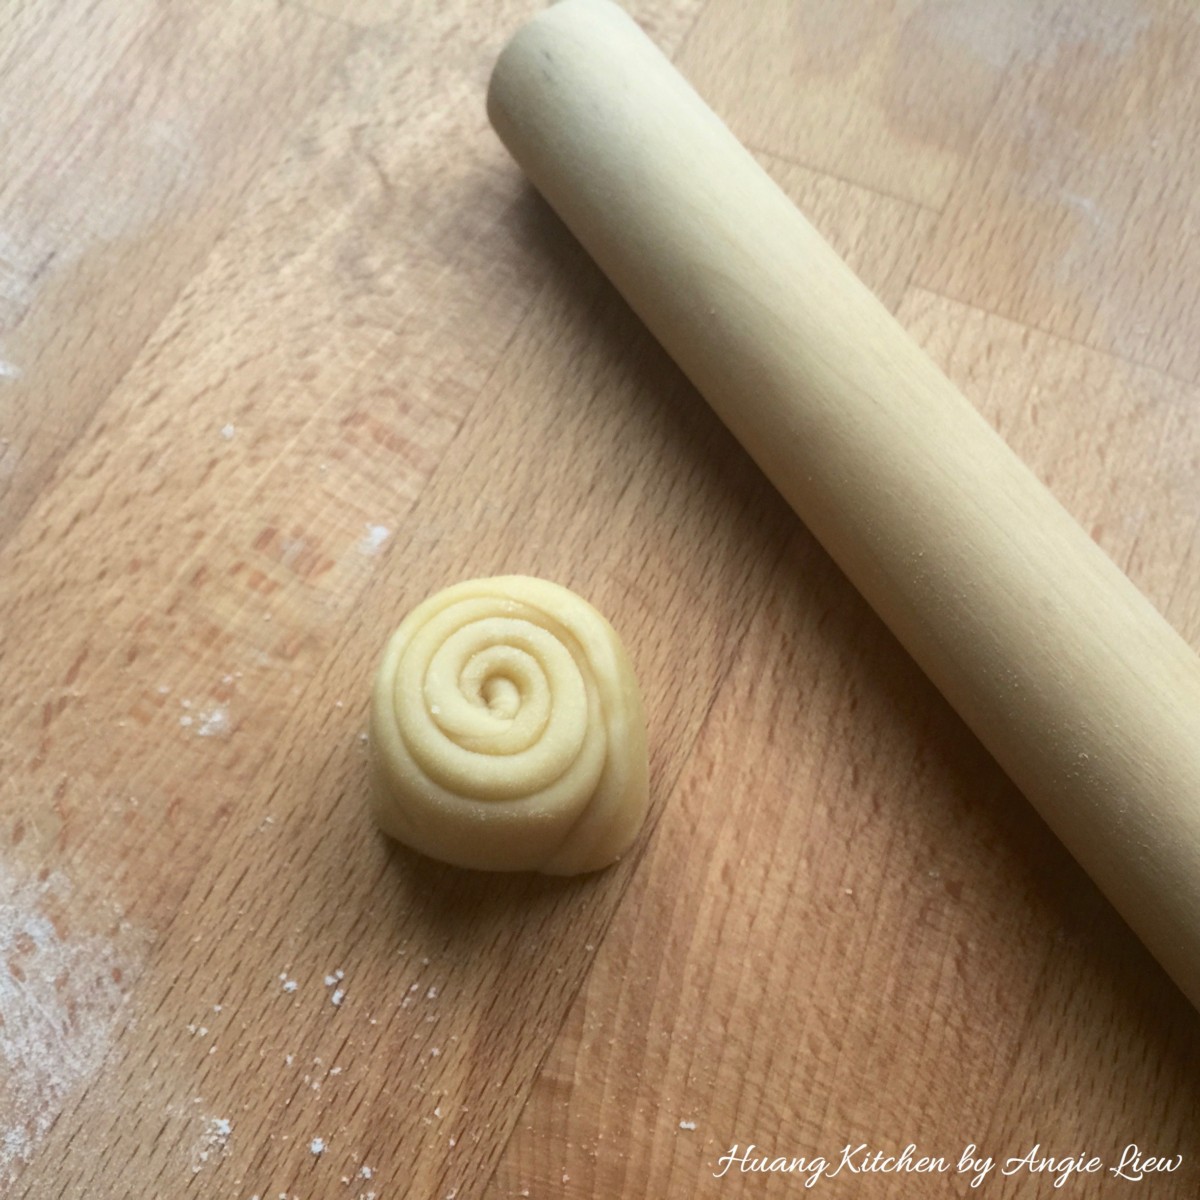 Spiral Curry Puffs recipe - flatten cut dough